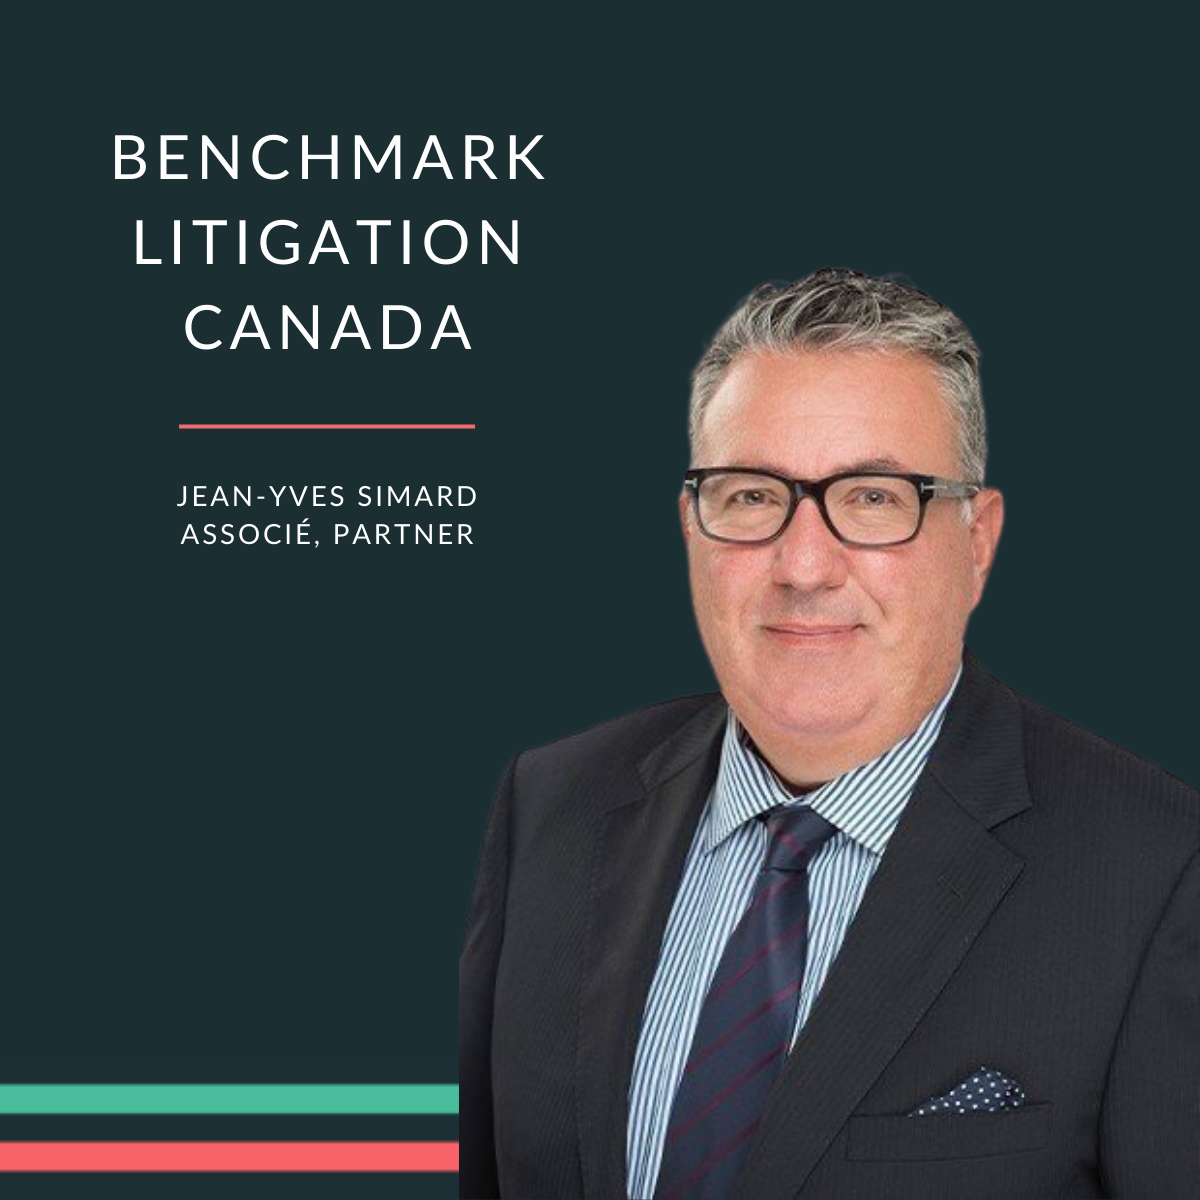 Jean-Yves Simard reconnu comme chef de file au Canada pour son expertise en litige par Benchmark Litigation Canada 